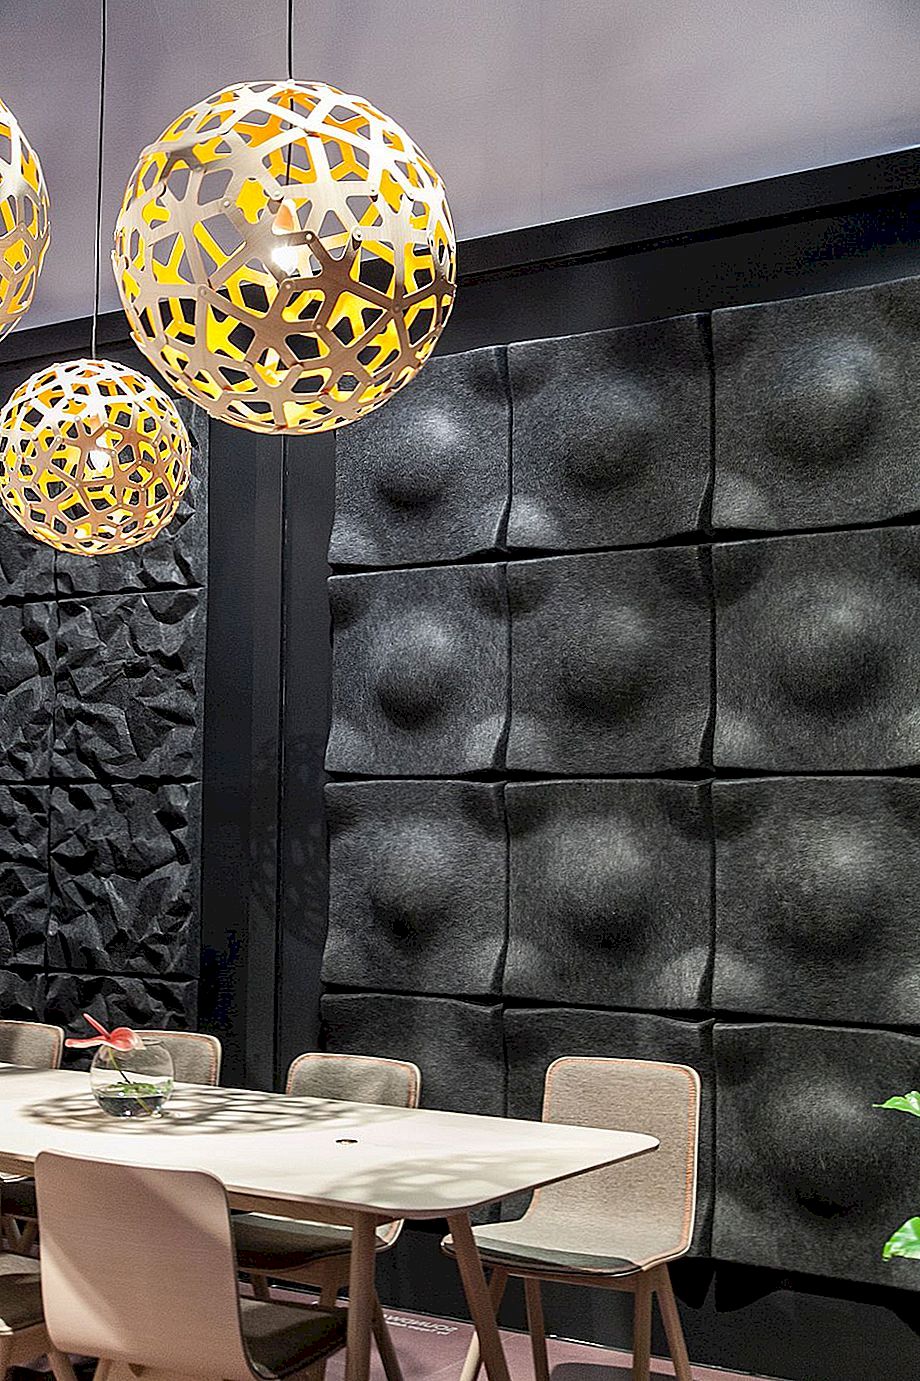 Coola användningar för dekorativa väggpaneler i moderna utrymmen